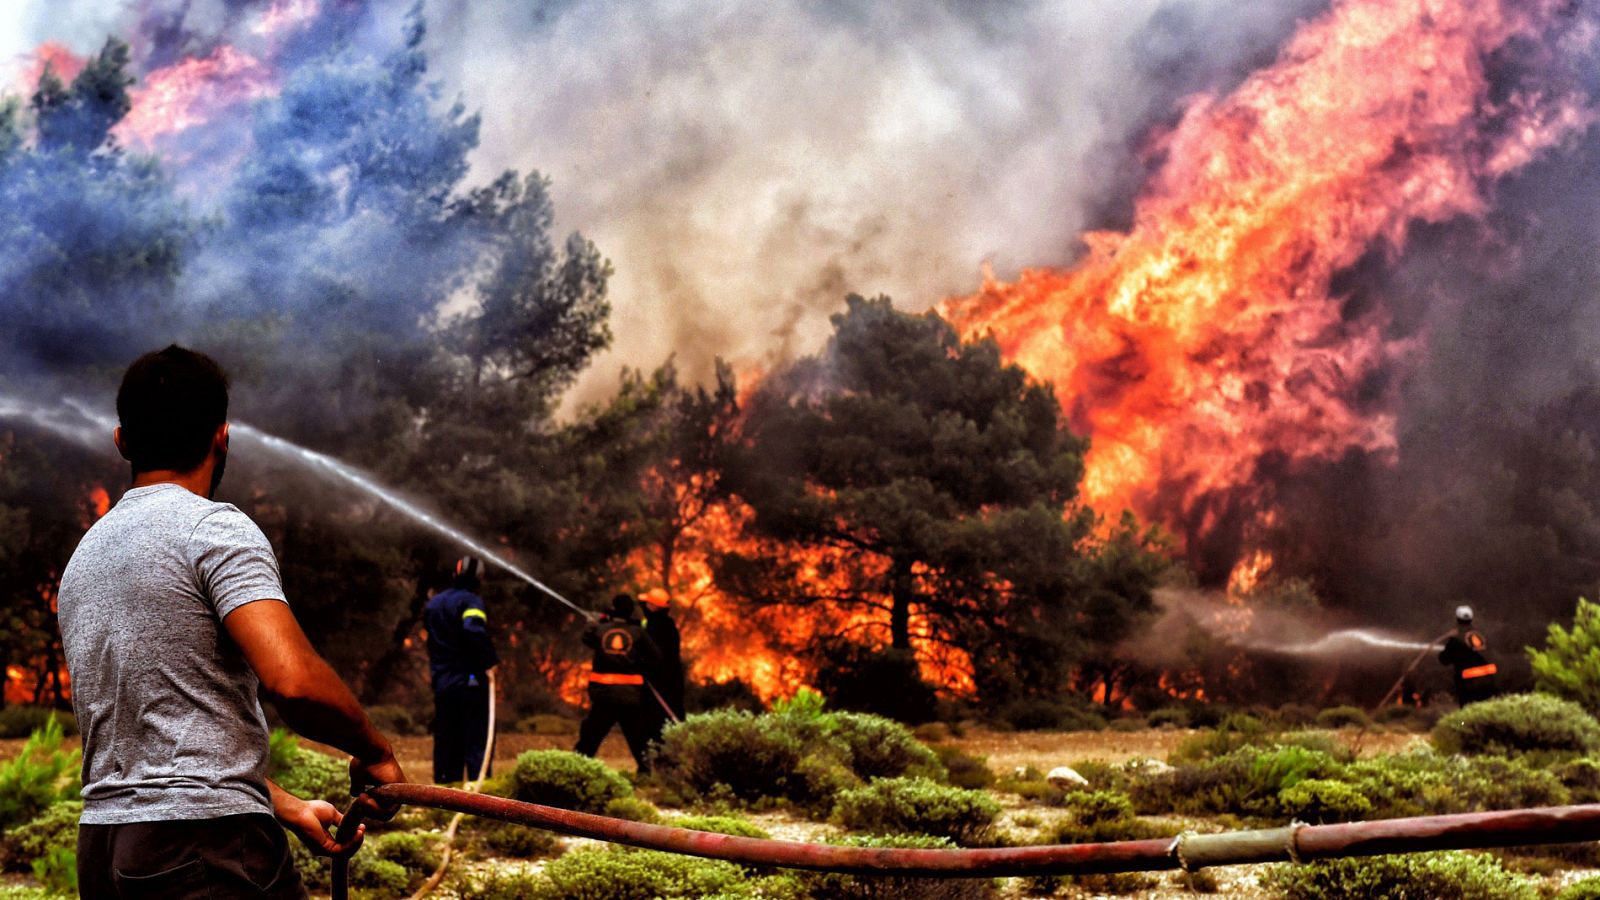 Grecia | Una española en Grecia, sobre la delicada situación griega: "Esta oleada de incendios es más trágica que la de 2007"